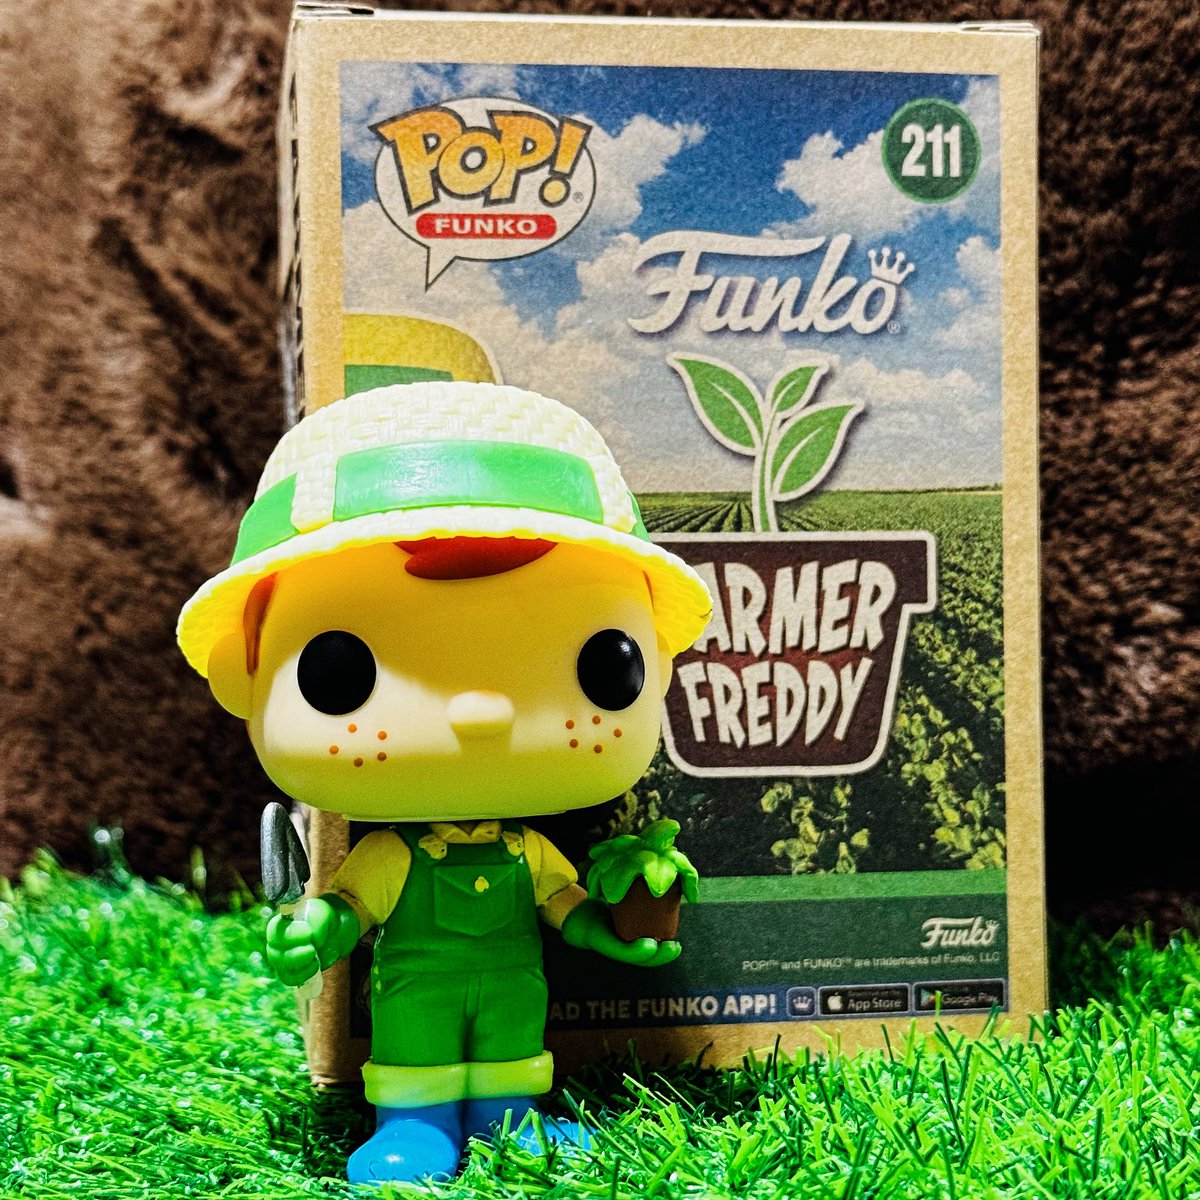 Happy Funko Friday Funatics!! 

Farmer Freddy is Preparing For His Earth Day 🌎 Photo Shoot!! 

@originalfunko 

#Funko #FunkoPop #FreddyFunko #FunkoPhotoADayChallenge #EarthDay #FreddyFriday